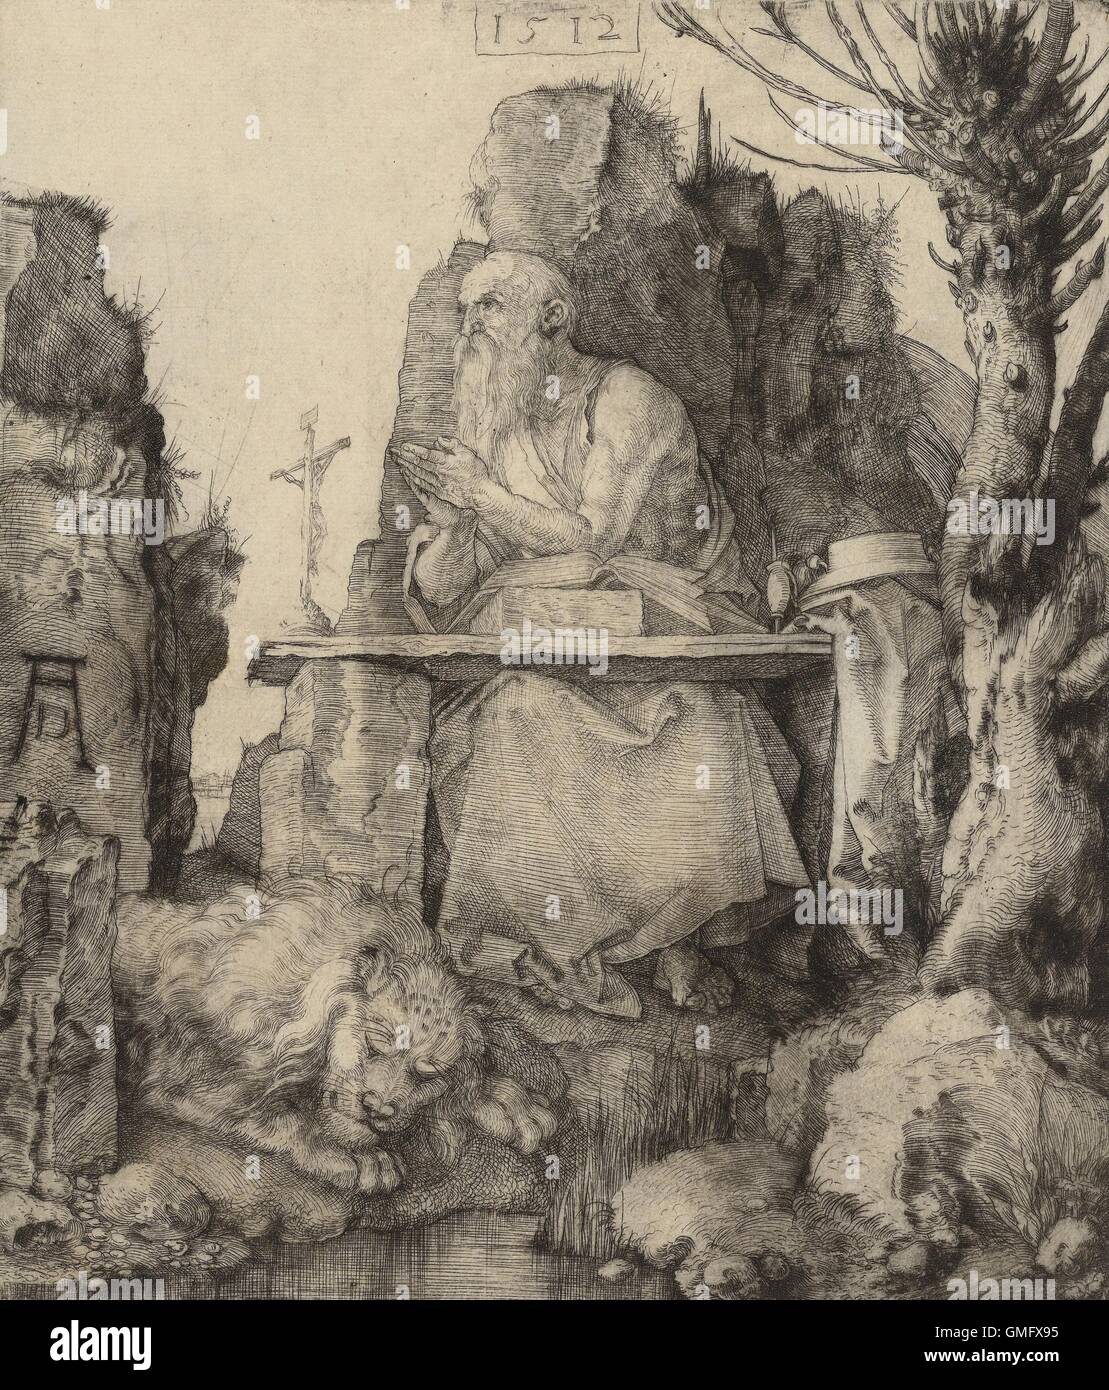 Saint Jérôme dans le désert, par Albrecht durer, 1512, allemand, le cuivre d'impression gravure pointe sèche. Jerome en ermite dans le désert, priant d'un rocky 24. À ses pieds est un lion, son symbole (BSLOC 2016 2 182) Banque D'Images